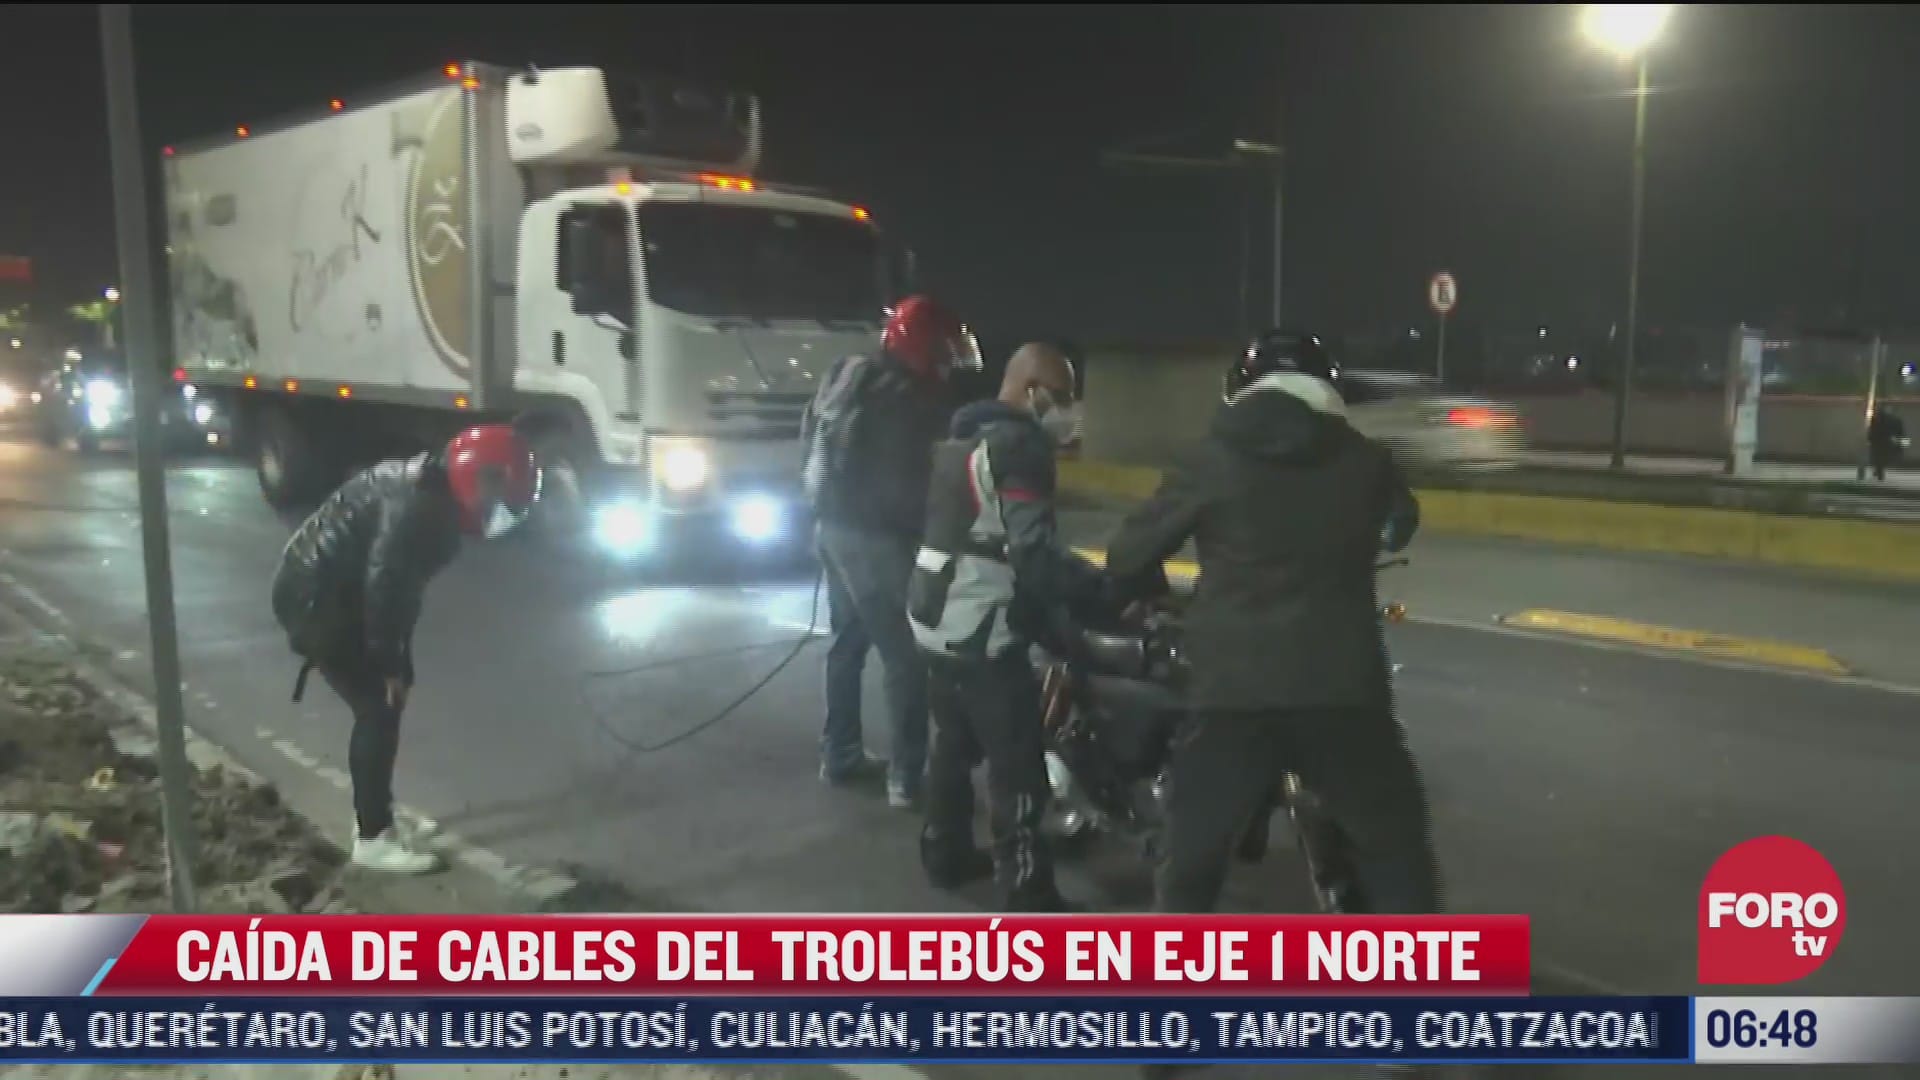 motociclistas se enredan en cables caidos del trolebus cdmx en eje 1 norte